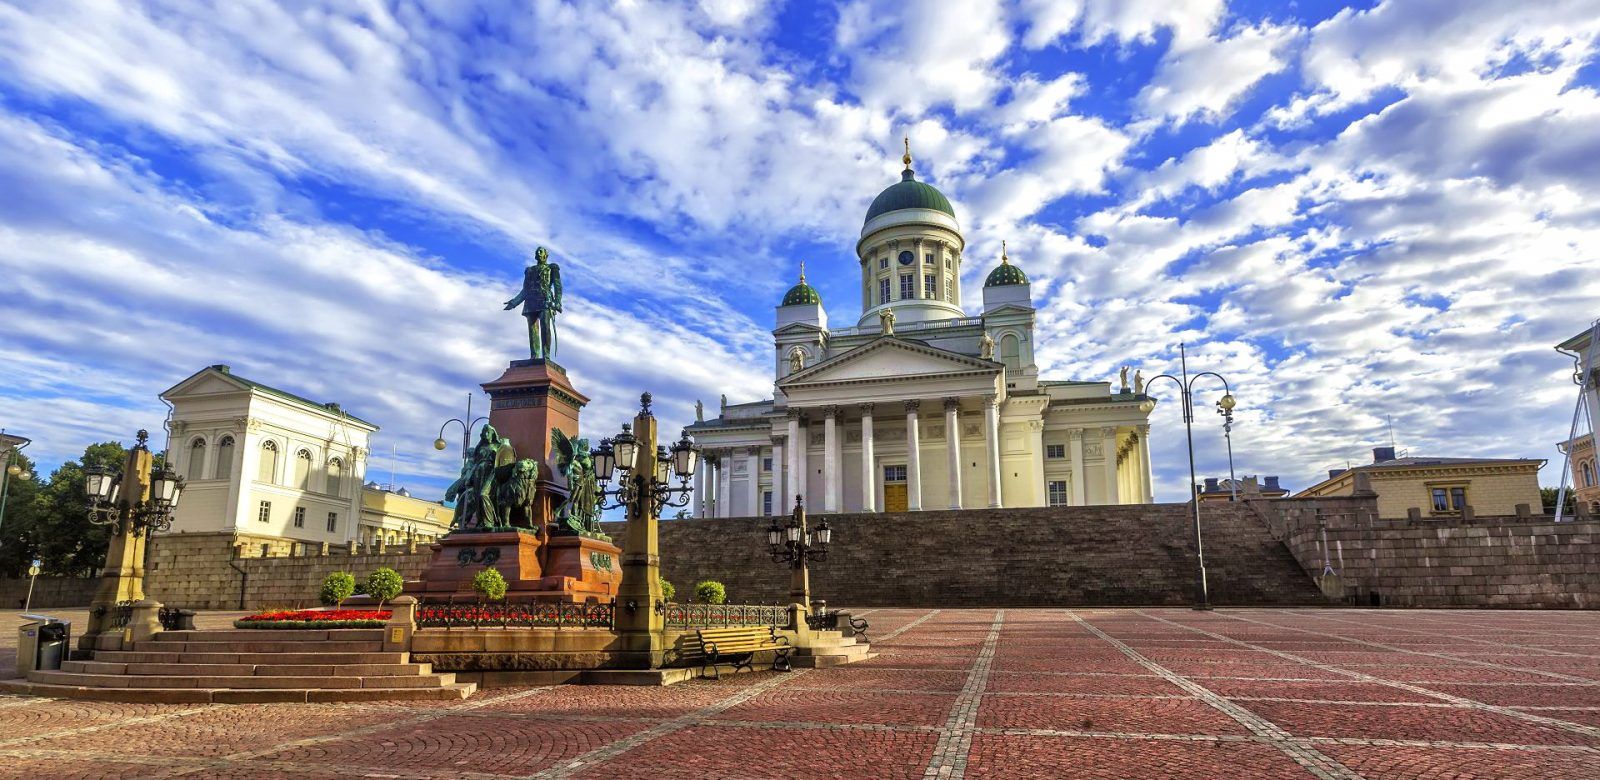 Кафедральный собор и памятник Александру Второму в Хельсинки